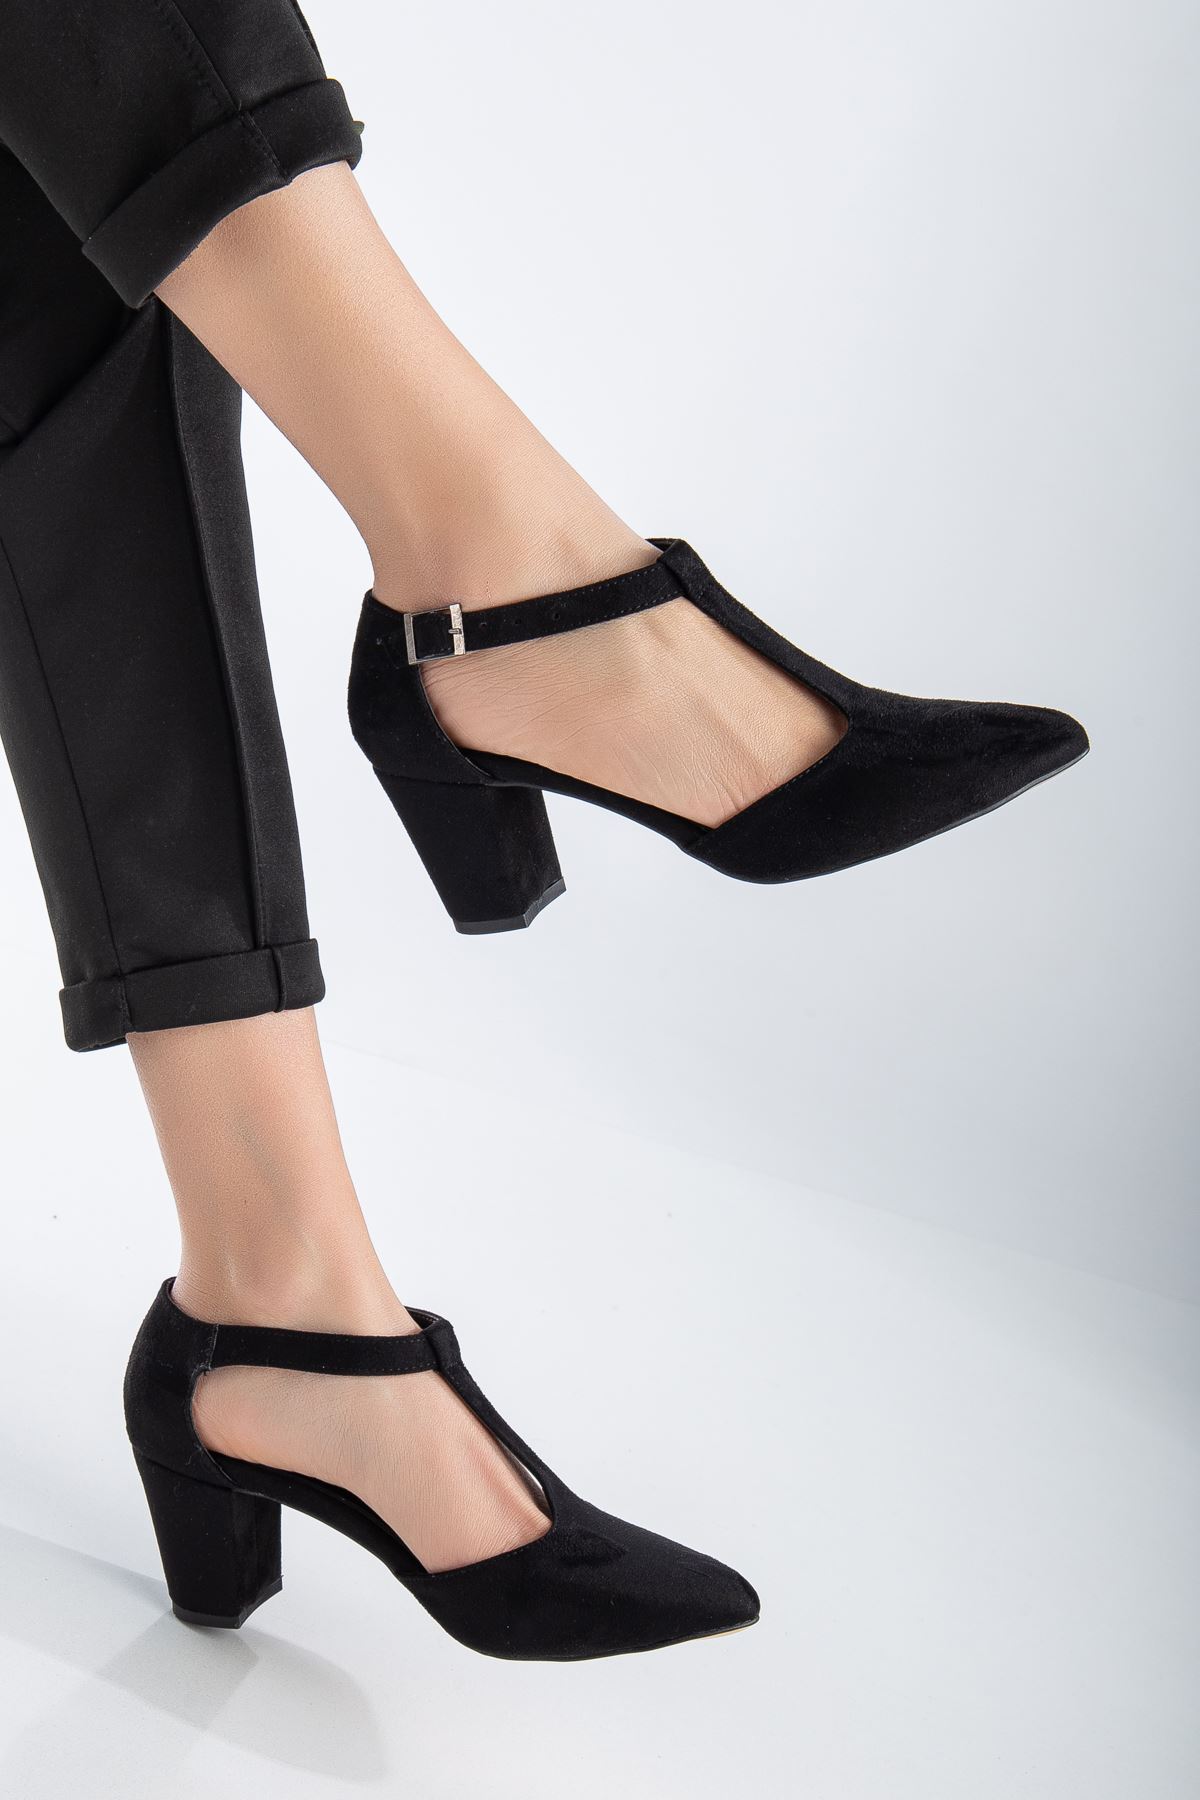 Niven Siyah Süet Topuklu Kadın Ayakkabı 